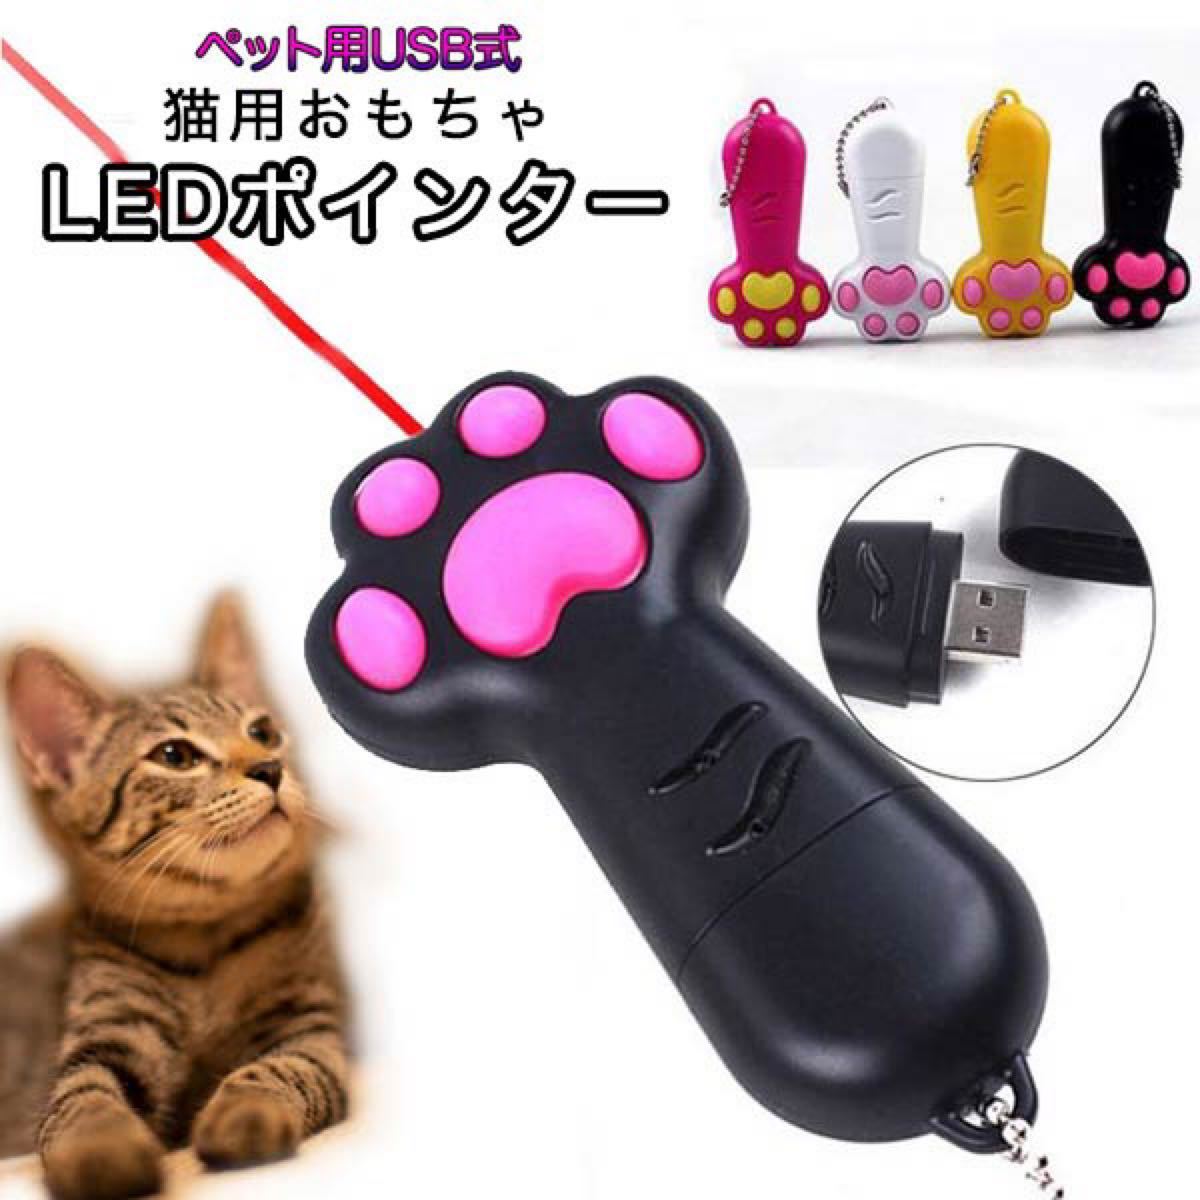 猫おもちゃ  玩具 ペット用 LEDポインター USB式 ビーム LED光 光る 夢中 肉球 運動不足解消 ボールチェーン付き 